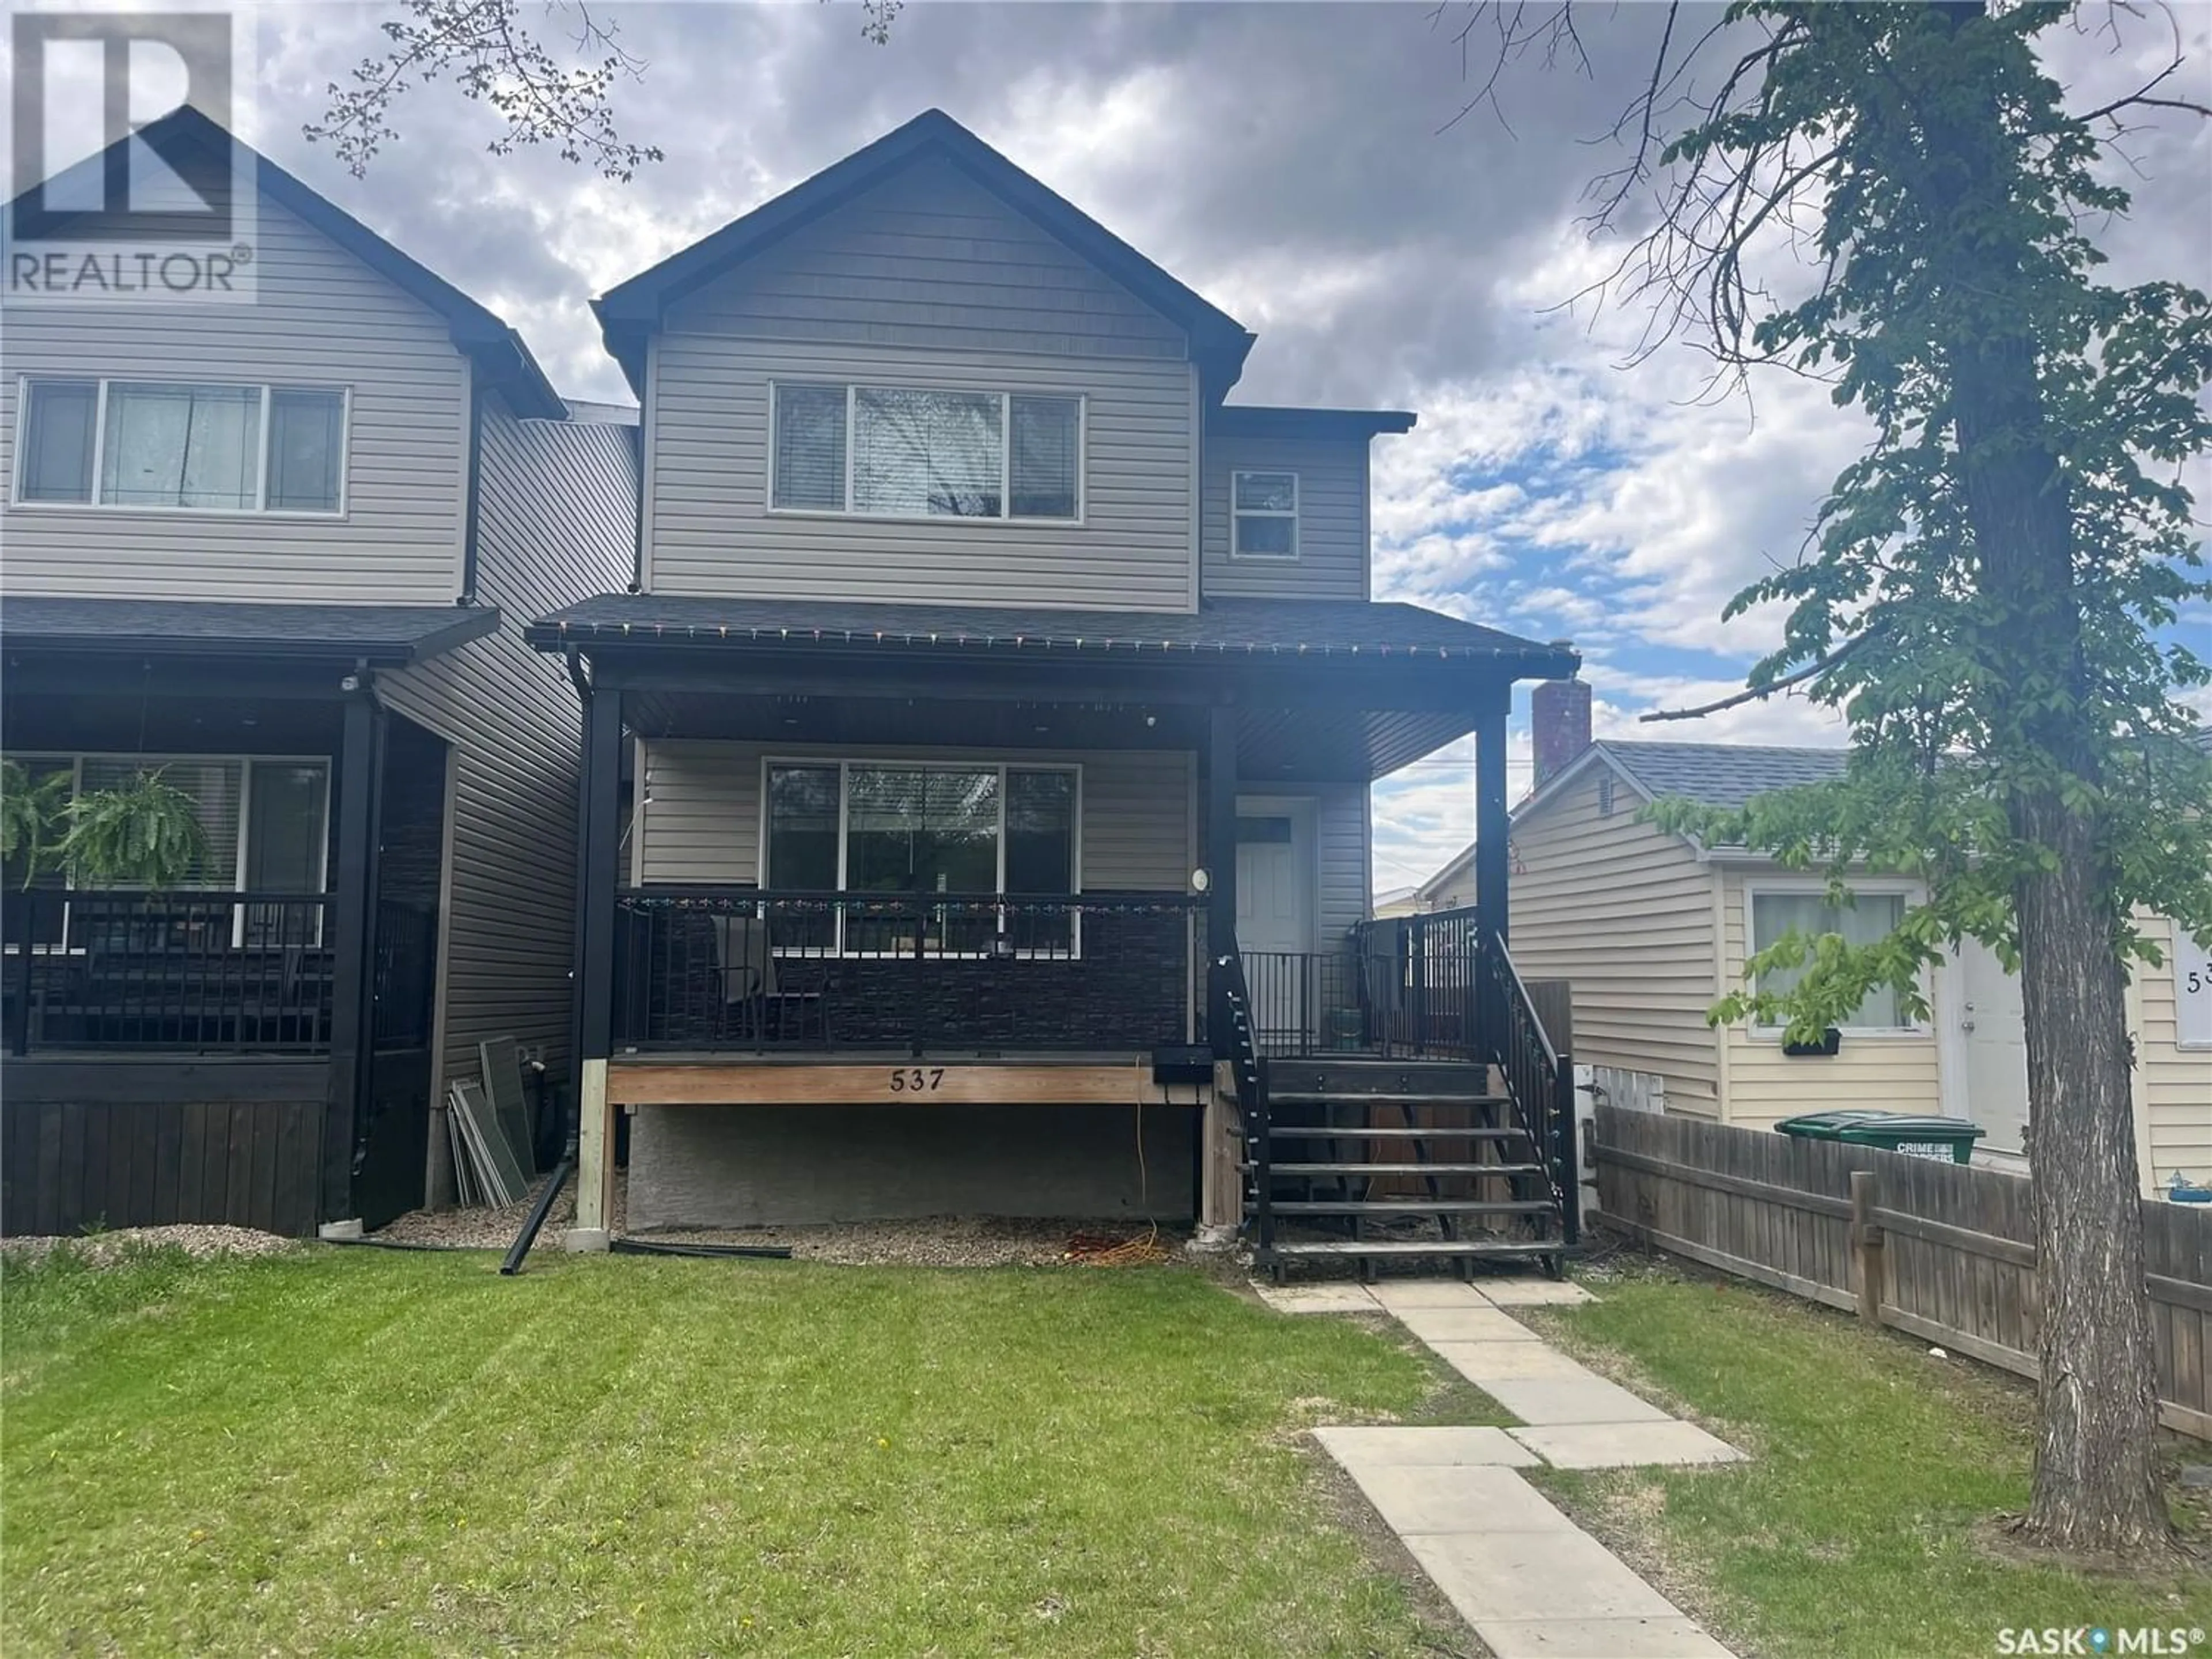 Frontside or backside of a home for 537 L AVENUE N, Saskatoon Saskatchewan S7L2P8